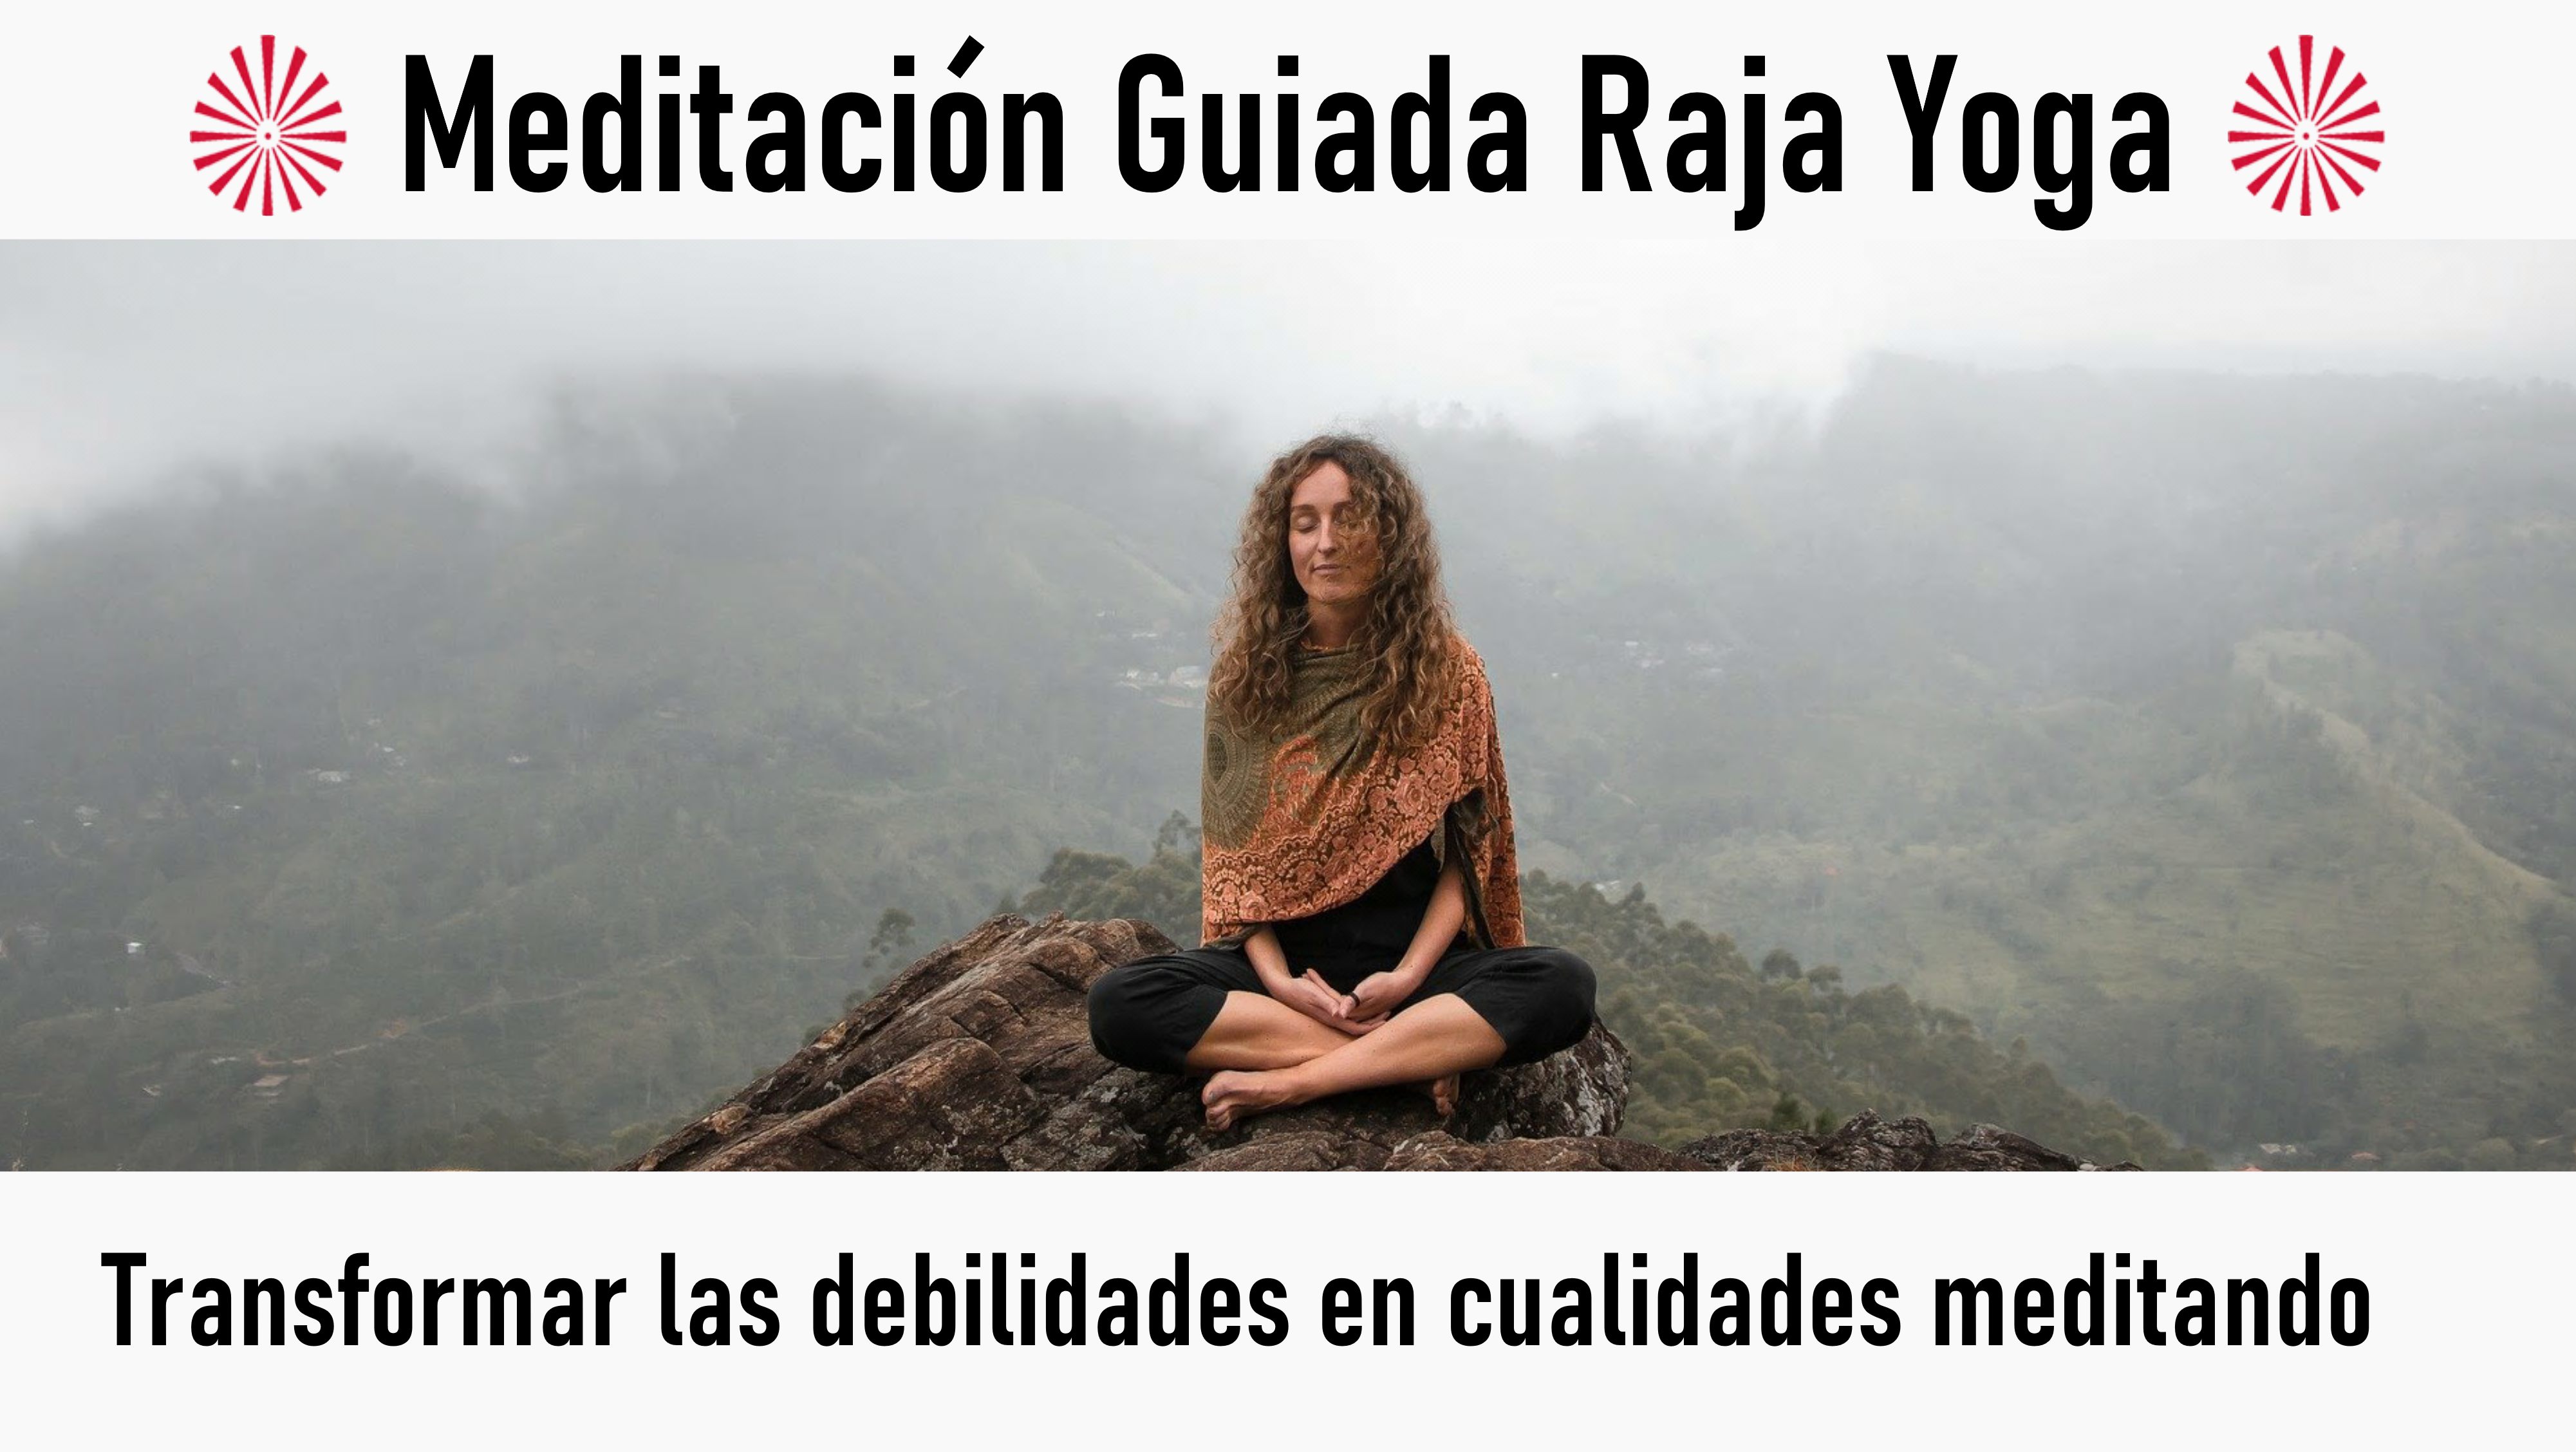 5 Agosto 2020 Meditación guiada: Transformar las debilidades en cualidades meditando